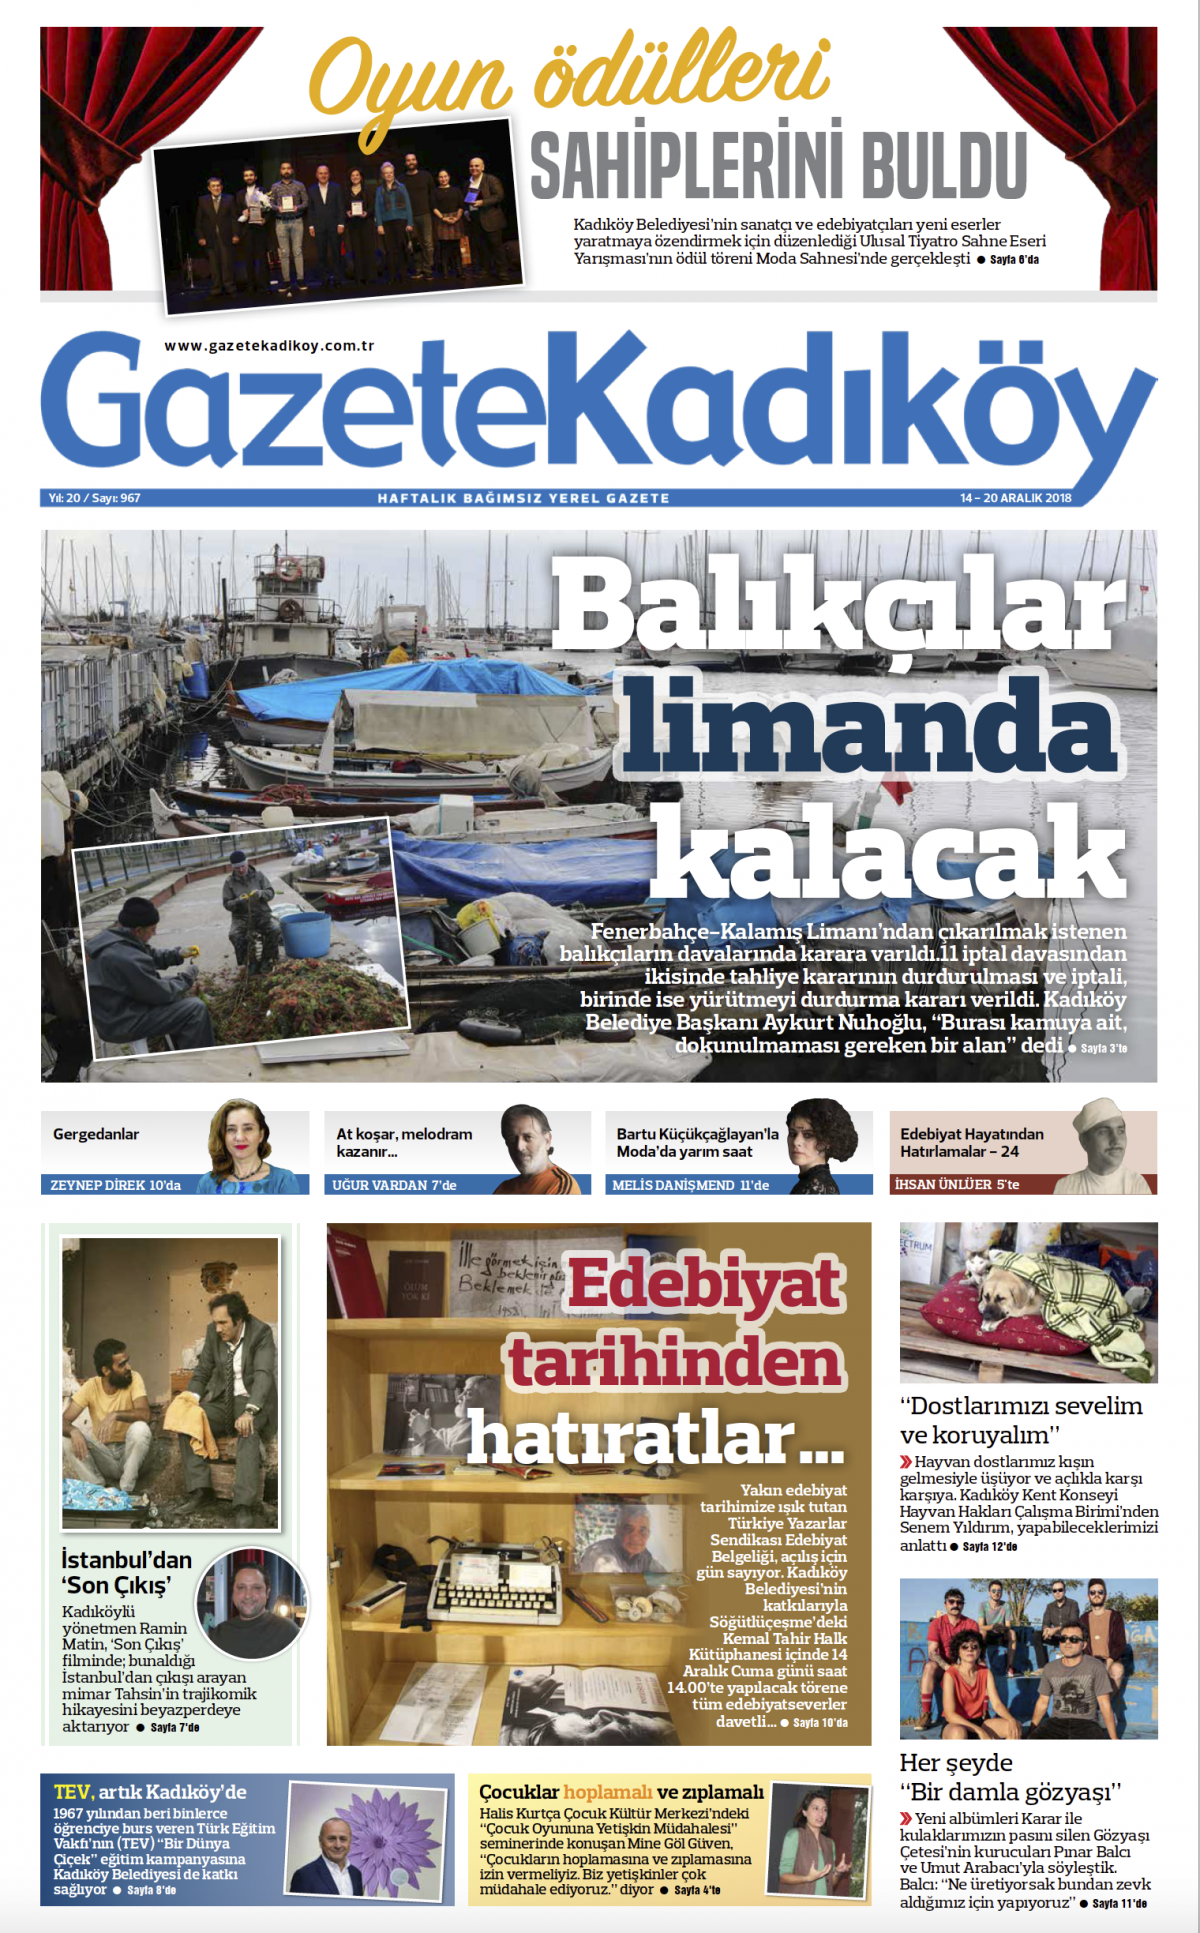 Gazete Kadıköy - 967. SAYI